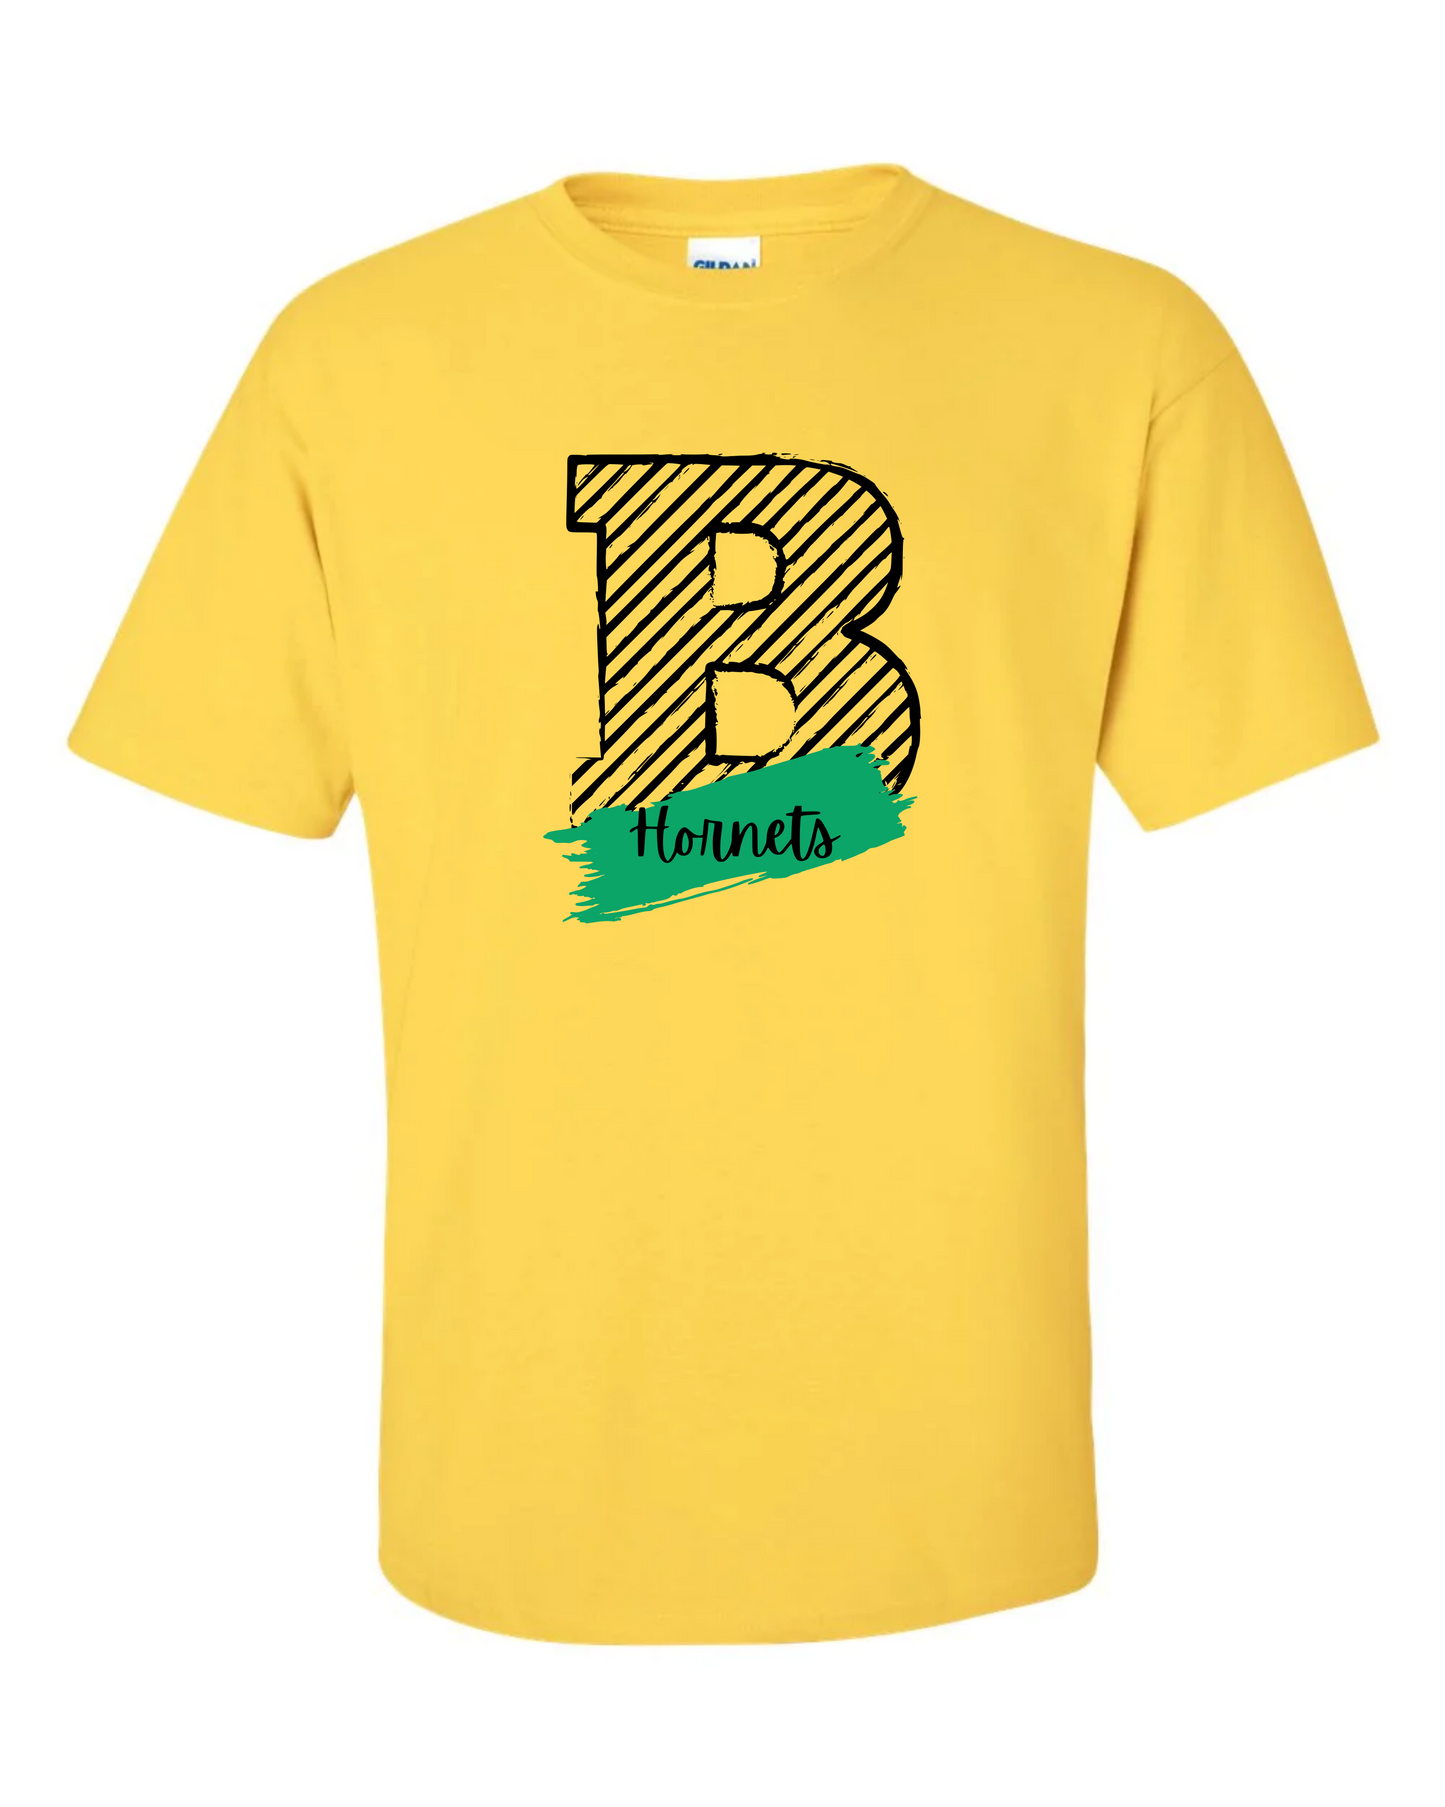 B Hornets Tshirt